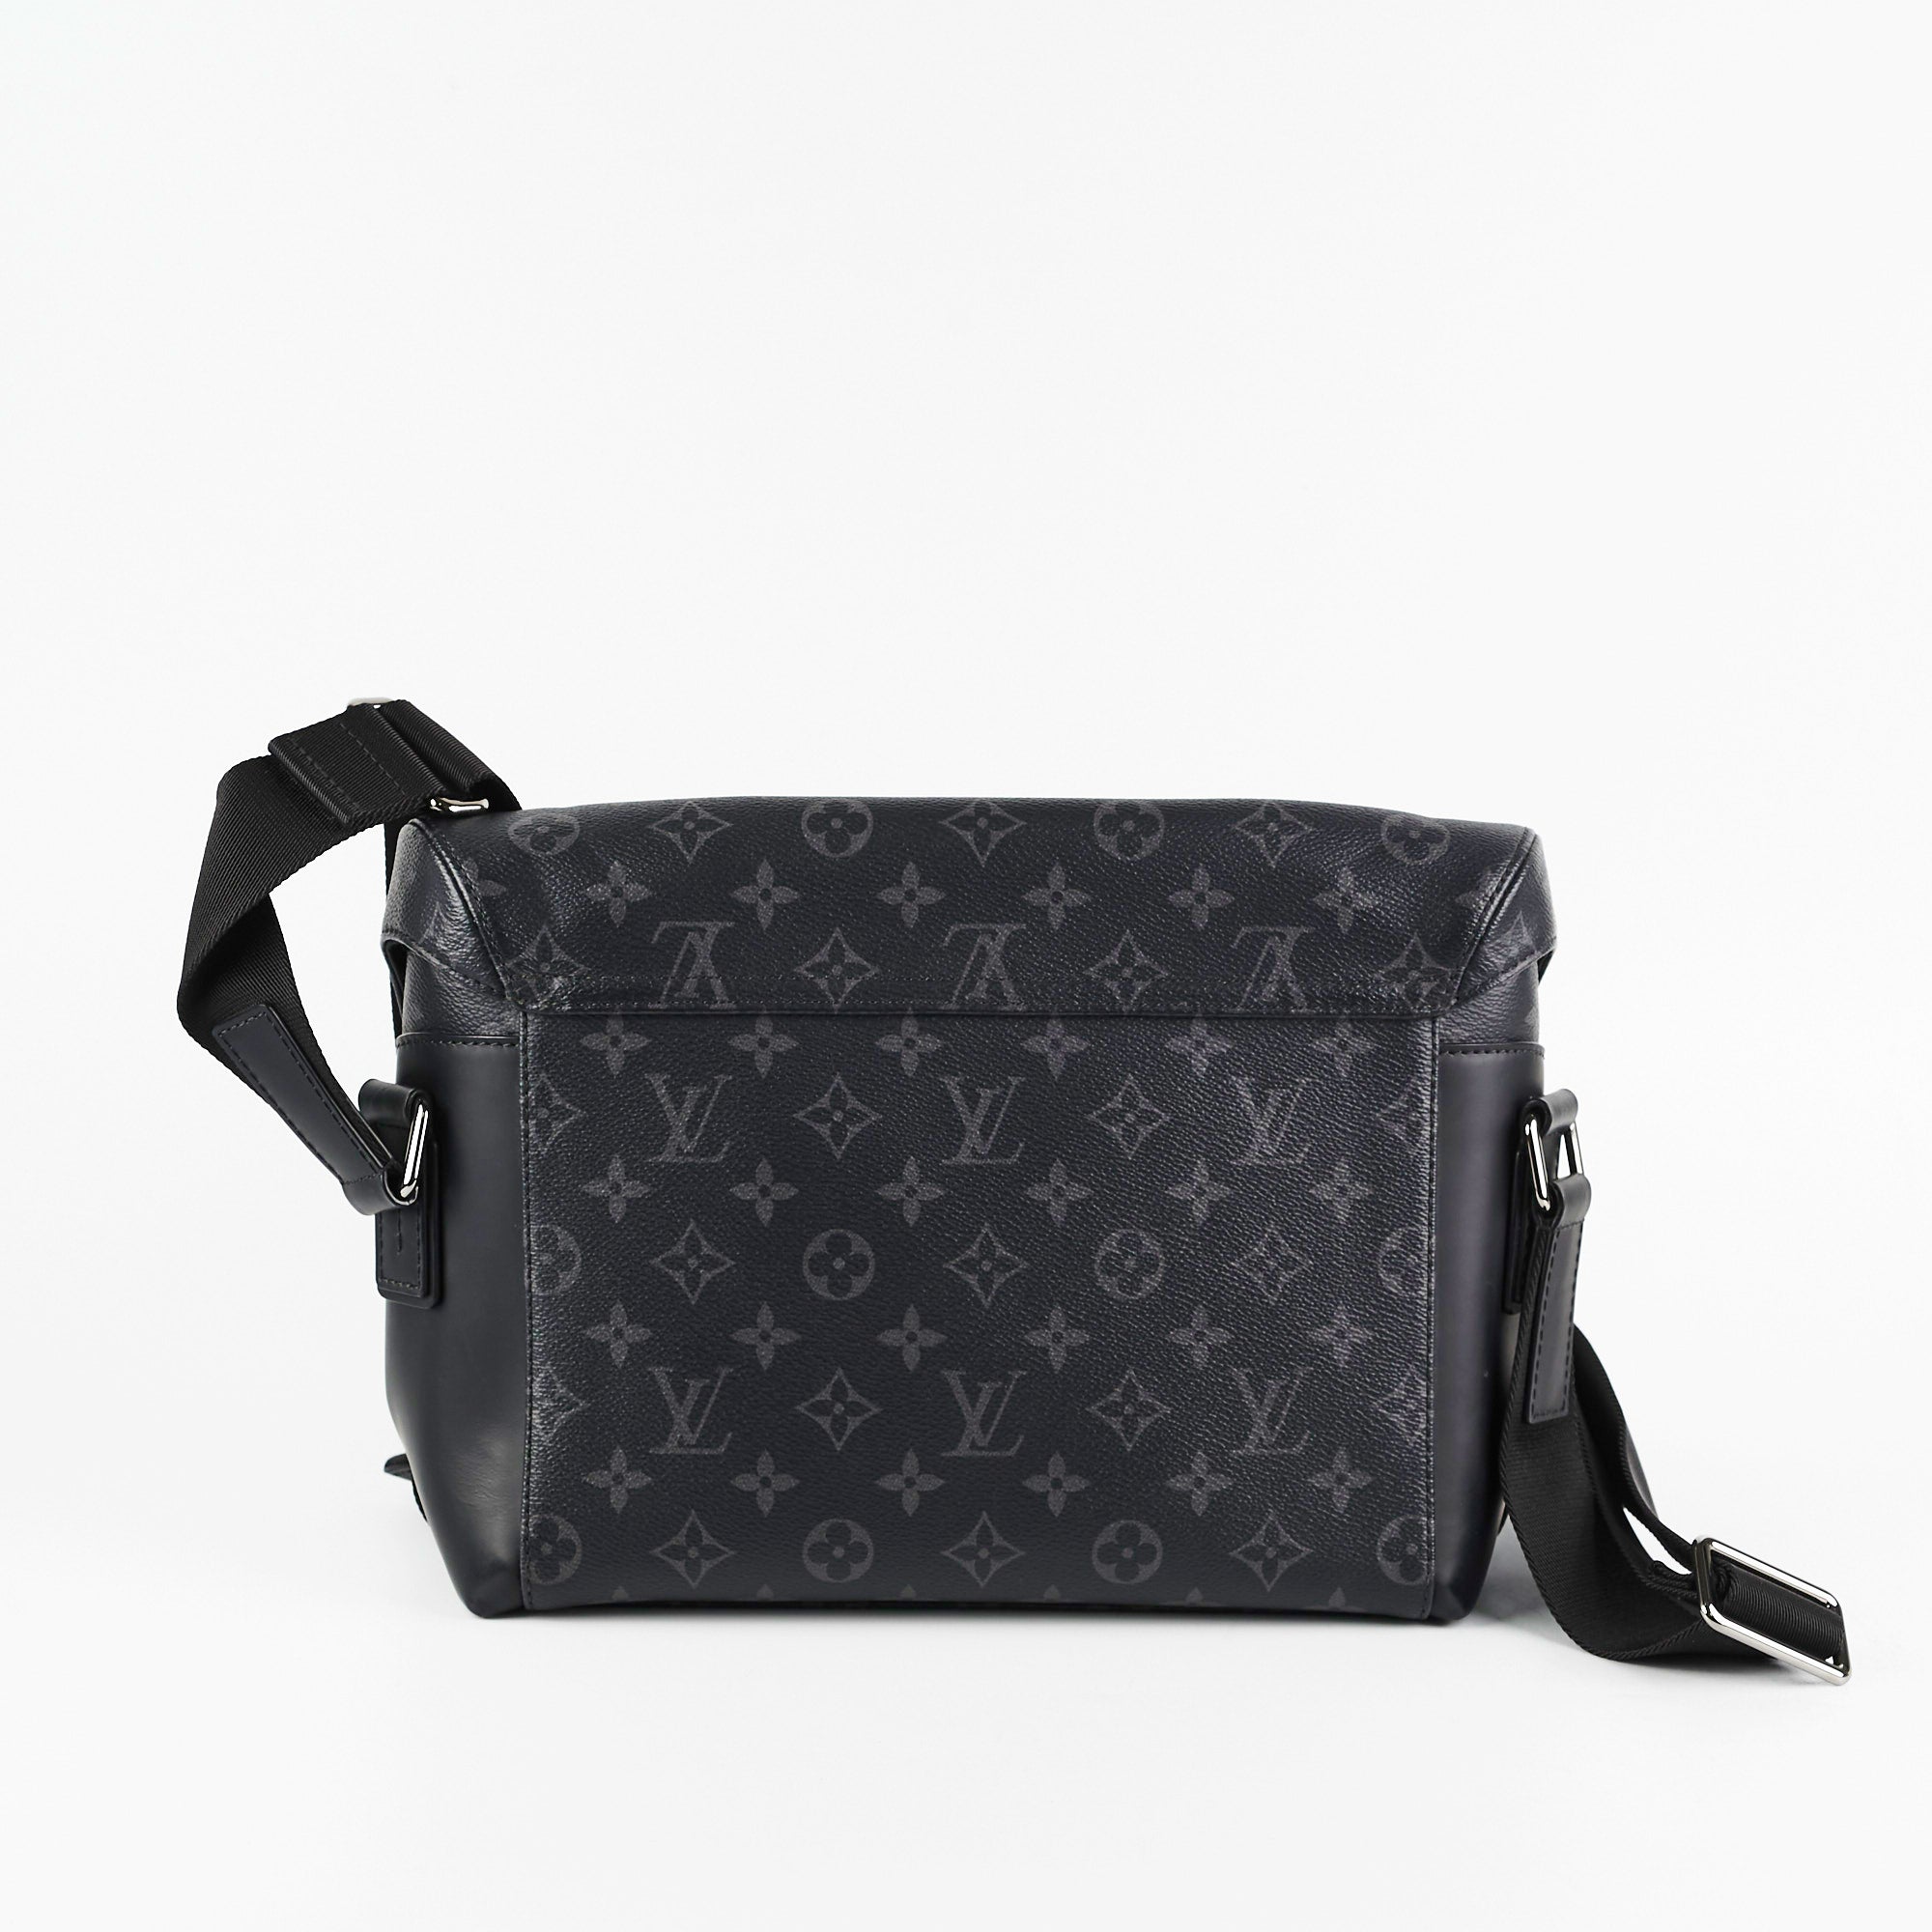 Louis Vuitton, Bags, Authenticity Guaranteed Louis Vuitton Messenger  Voyage Pm Shoulder Bag